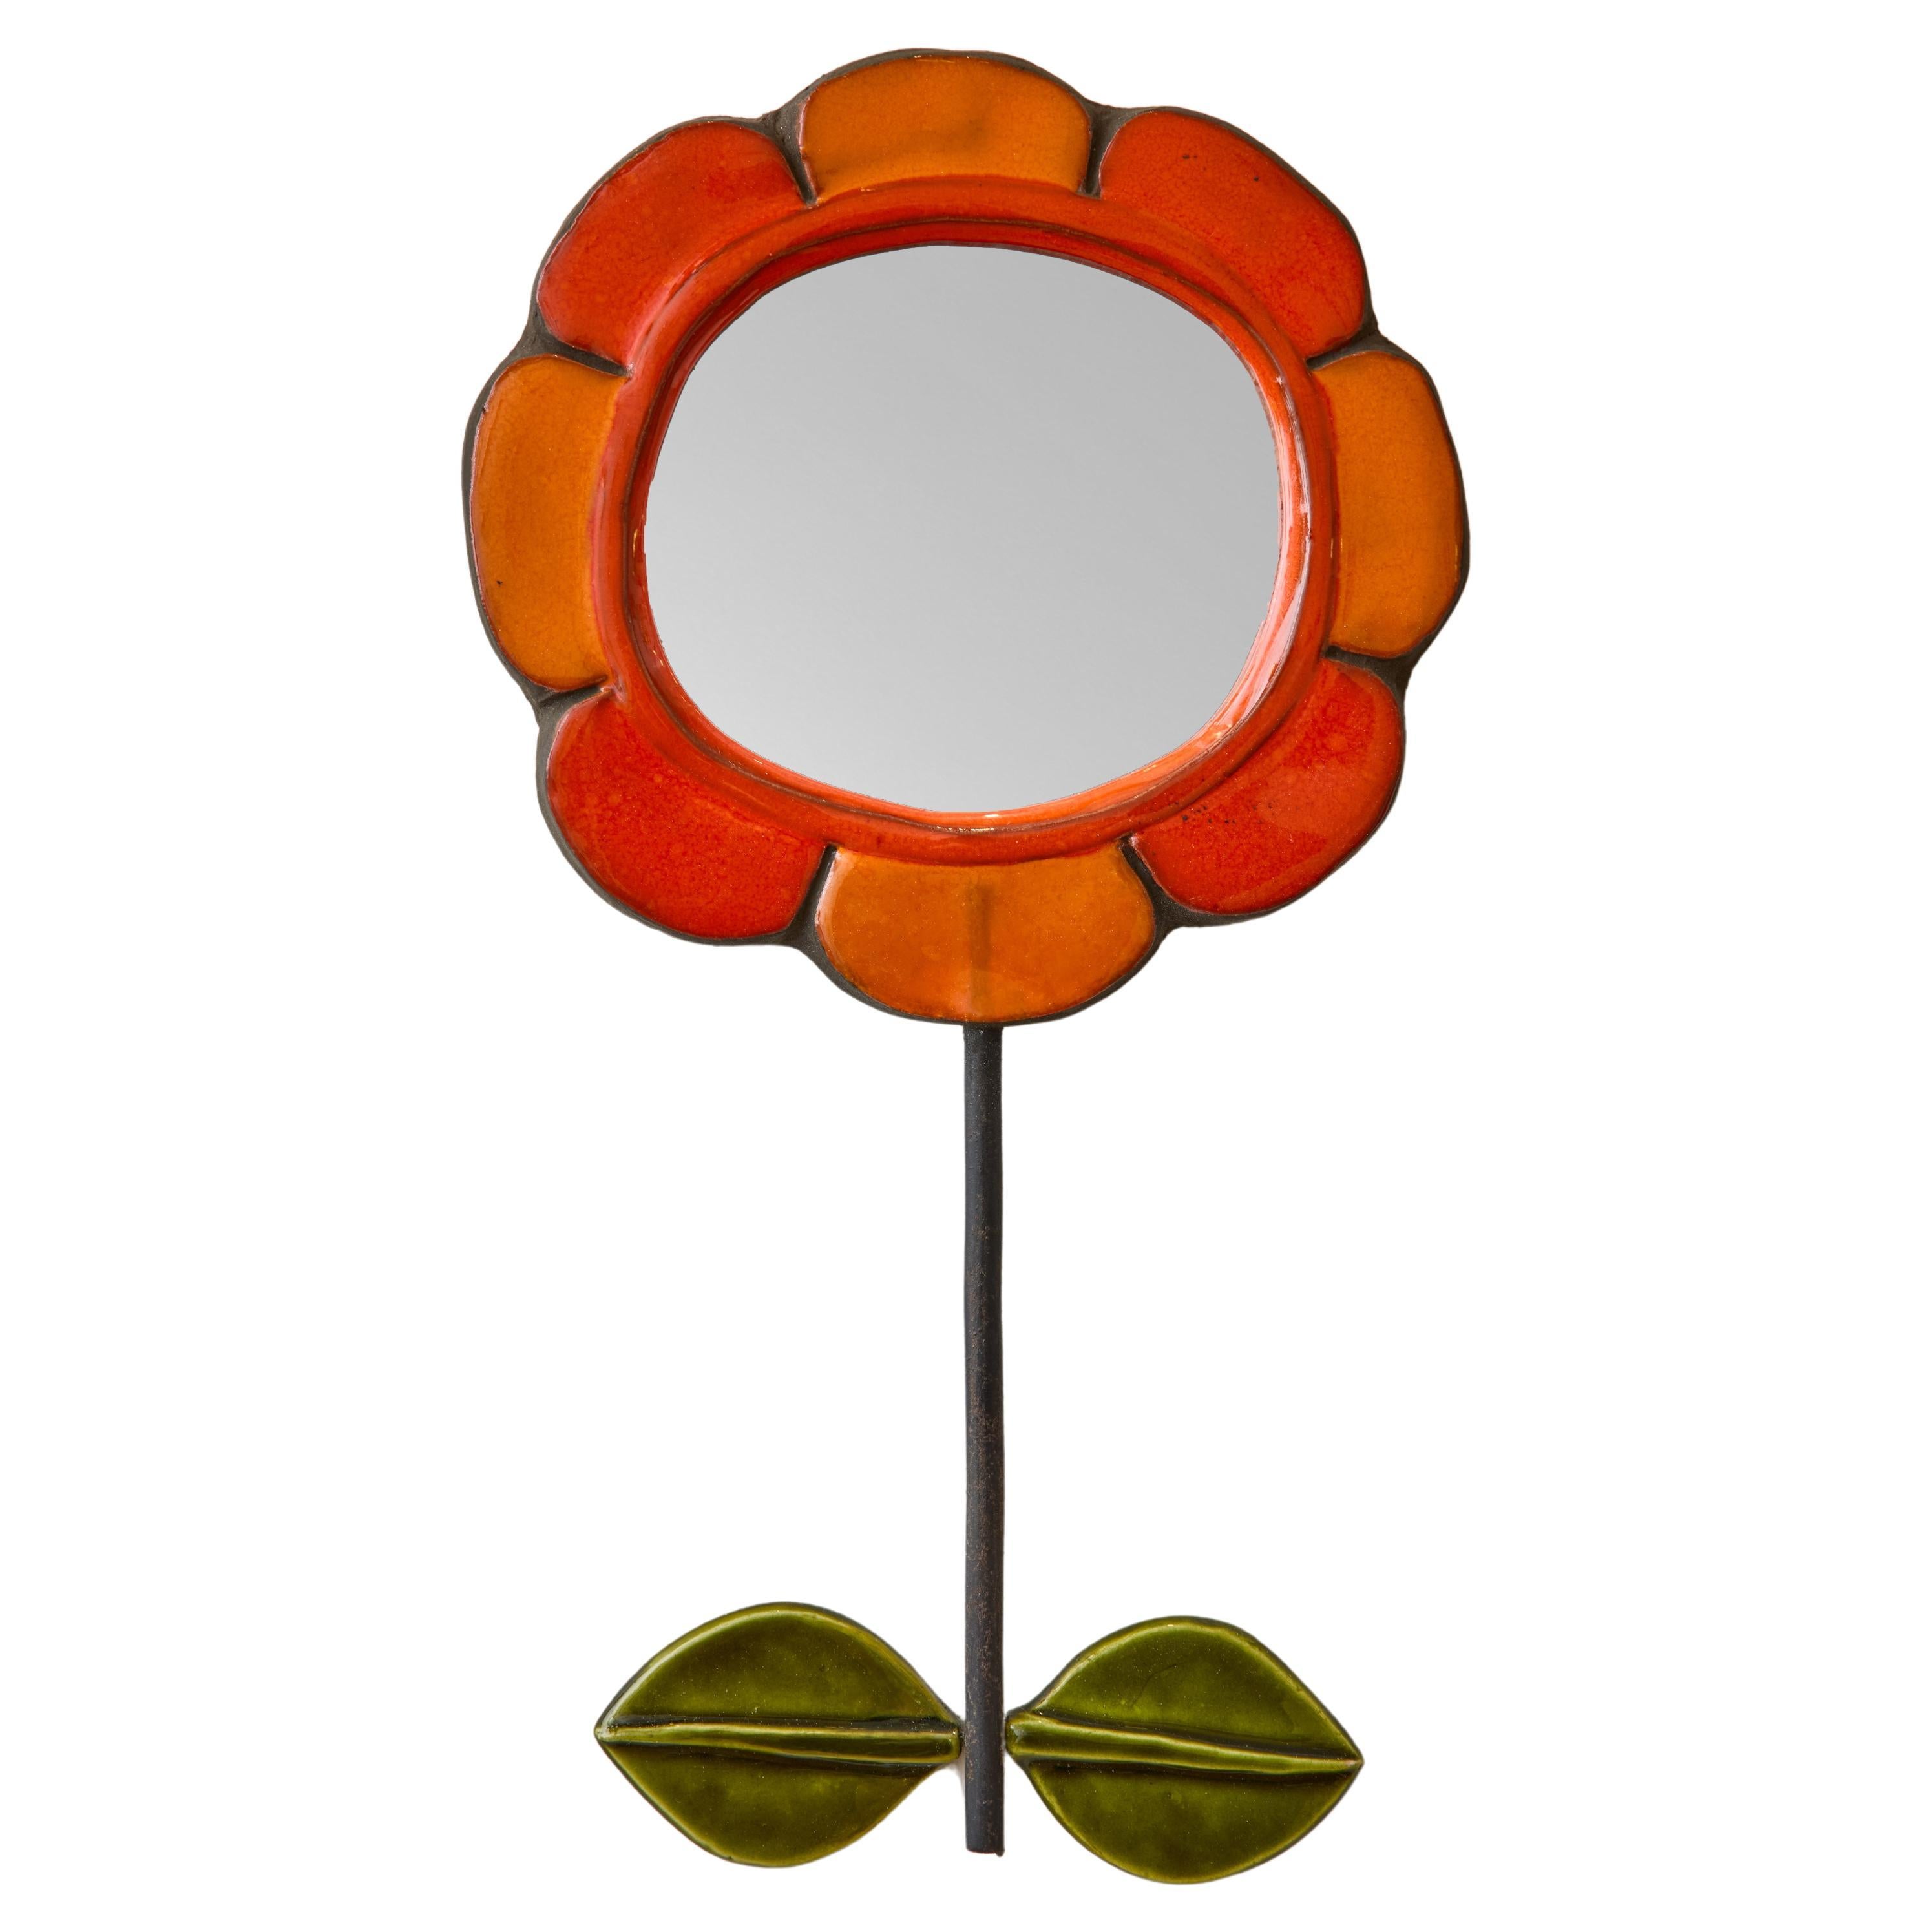 Mithe Espelt Flower Shaped Mirror With Orange Petals